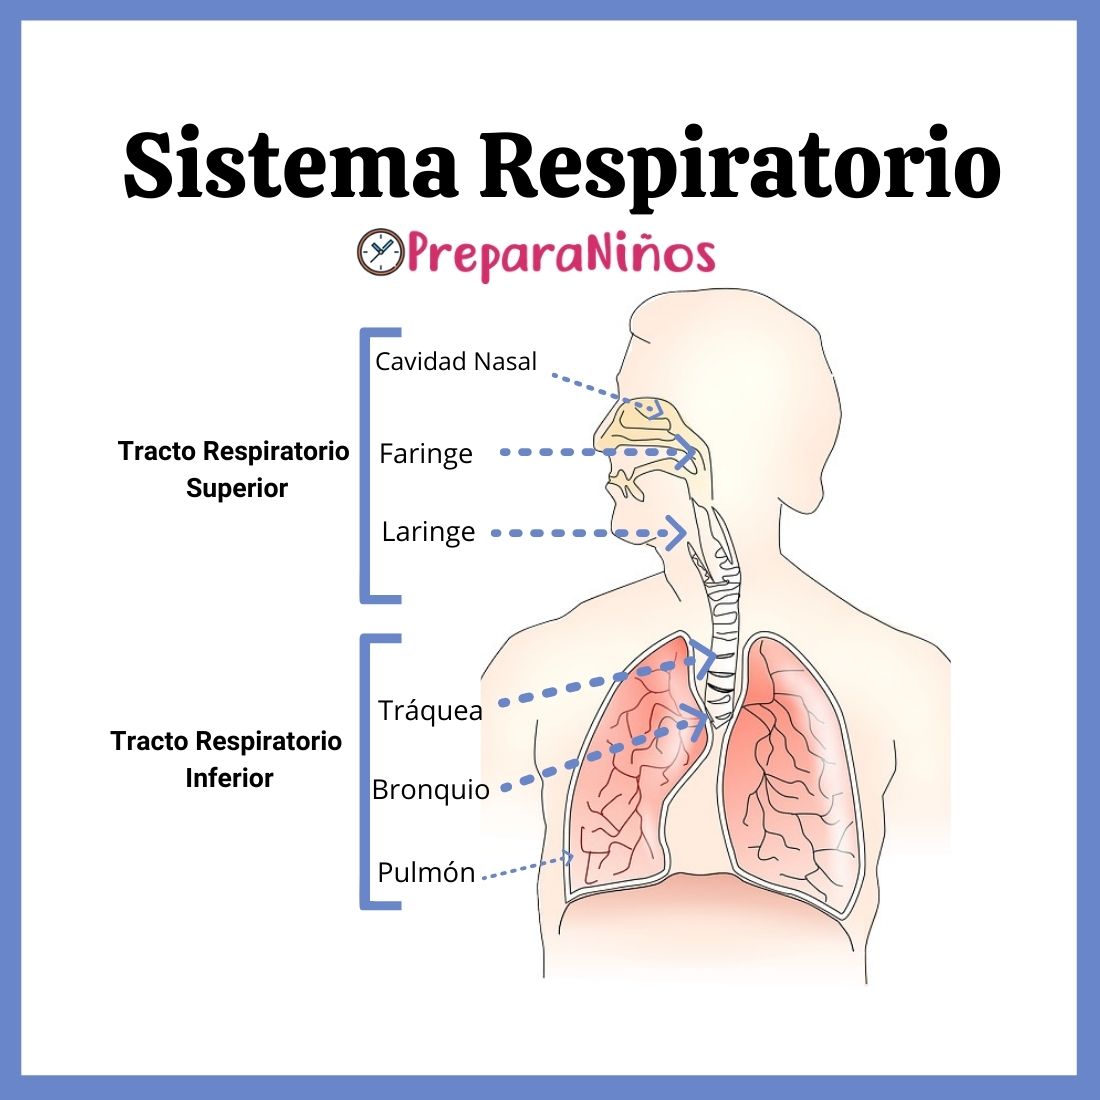 Sistema Respiratorio: Partes y Funciones